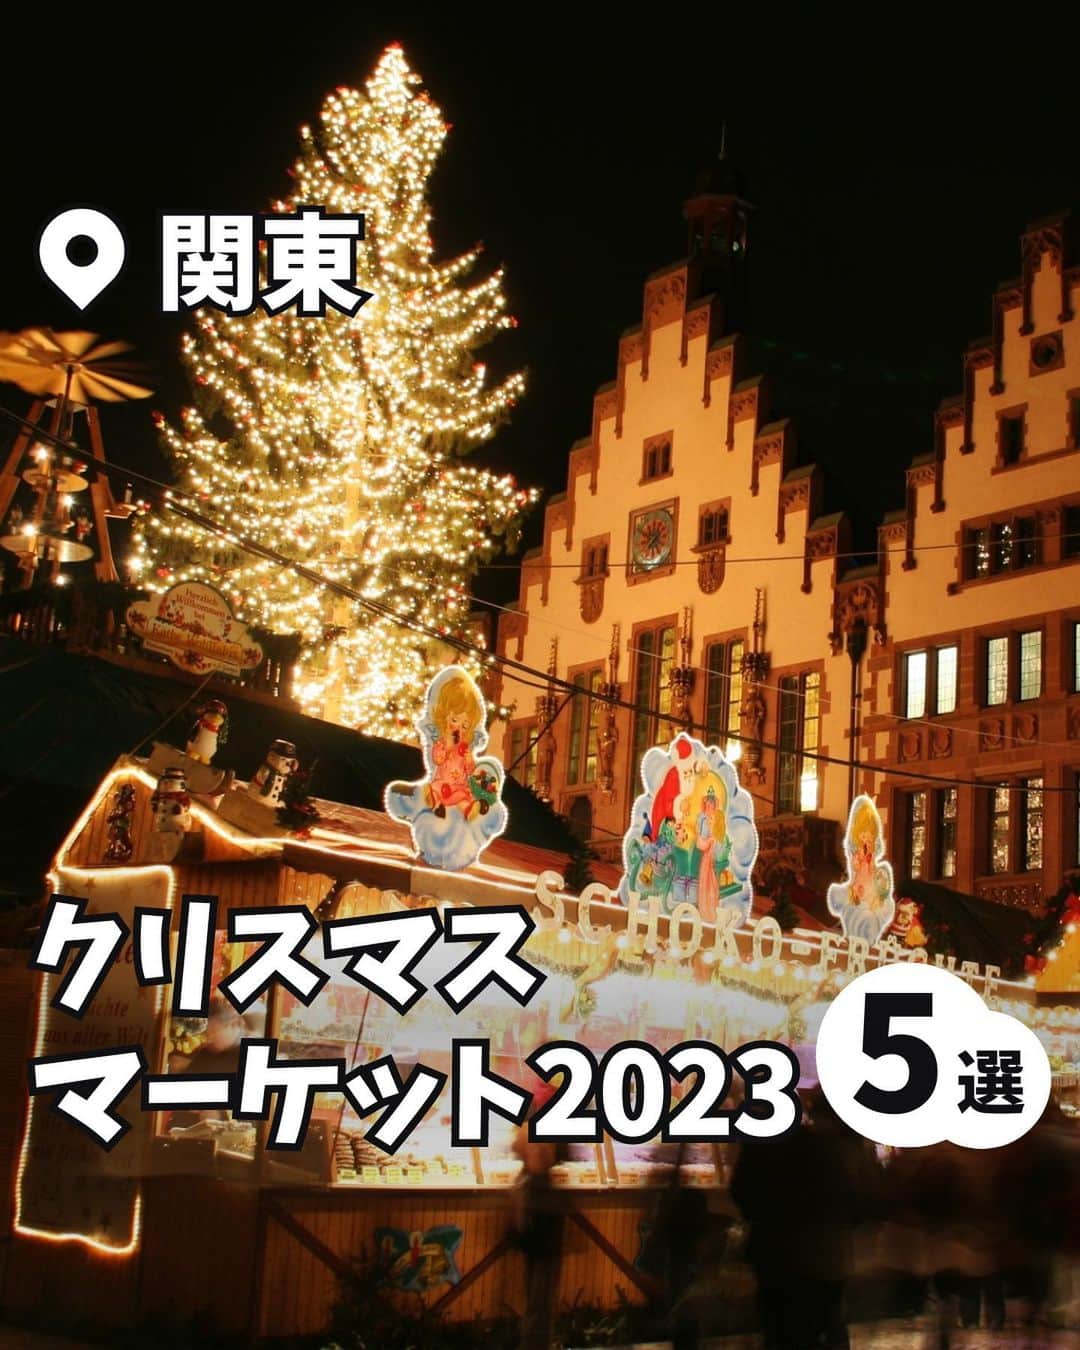 iko-yo（いこーよオフィシャル）のインスタグラム：「今回ピックアップしたのは「関東クリスマスマーケット2023 5選」！ ーーーーーーーーーーーーーーーーーー 📍東京都港区 【六本木ヒルズ クリスマスマーケット2023】 2023年11月25日（土）〜12月25日（月）の期間に開催！ 今回で17年目を迎える本イベントは、会場内に世界最大といわれるドイツ・シュツットガルトのクリスマスマーケットを再現！  📍東京都墨田区 【ソラマチ クリスマスマーケット2023】 2023年11月9日（木）〜 12月25日（月）の期間に開催！ 食べ応え満点のビッグソーセージやホットワインなど見た目もキュートなクリスマスグルメが満載！　 12月15日（金）〜25日（月）の期間は、東京スカイツリーの塔体に美しい映像を映し出すプロジェクションマッピングも実施されます♪  📍神奈川県横浜市 【Christmas Market in 横浜赤レンガ倉庫】 2023年11月24日（金）〜12月25日（月）の期間に開催！ イベントシンボルである高さ約10mの生木のクリスマスツリーに光が灯り、ドイツ製のヒュッテ（木の小屋）やオブジェなどの装飾でクリスマス気分を盛り上げます♪  📍千葉県千葉市 【幕張クリスマスマーケット2023】 2023年11月18日（土）〜2024年1月8日（月・祝）に開催！ 寒い冬にピッタリのビーフシチューやグラタン、肉汁があふれるソーセージなど本場ドイツを感じられるメニューがそろいます♪  📍埼玉県さいたま市 【コクーンシティ クリスマスマーケット2023】 2023年12月21日（木）〜25日（月）に開催！ 毎年恒例の大人気イベント「クリスマスキャンドルナイト2023」が12月20日（水）〜25日（土）の期間に実施♪ 1,000個のキャンドルを使用し「天の川と星」を描きます。イルミネーションとともに灯るキャンドルモチーフは、まさに絶景！　  ※2023年12月5日時点の情報です。 最新の情報は公式HPや「いこーよ」サイトでご確認ください。 ーーーーーーーーーーーーーーーーーーー おでかけ情報量は日本最大級！ 子どもとお出かけ情報サイト「いこーよ」 「親子でおでかけしたい場所」をご紹介させていただいています！ お子さんとのおでかけの思い出の写真を、このアカウントをフォローの上#いこーよ #いこーよおでかけ部 をつけてぜひ投稿してください。魅力的な写真は、いこーよ公式SNSで紹介させていただきます！ 募集中タグ#いこーよ #いこーよおでかけ部 「子どもと行きたい！」と思ったら保存が便利！ プロフィールのURLから「いこーよ」のサイトに行くと、他の投稿やオトクな情報などが載っています♪ ☞ @ikoyo_odekake #いこーよ #お出かけ #おでかけ #お出かけスポット #子連れ #こどものいる暮らし #子連れスポット #いこーよおでかけ部 #関東ママ #東京ママ #千葉ママ #神奈川ママ #埼玉ママ #クリスマス #クリスマス2023 #クリスマスマーケット #イルミネーション #イルミ #クリスマスマーケット2023 #イルミネーション2023 #イルミ2023 #東京イルミネーション #関東イルミネーション」